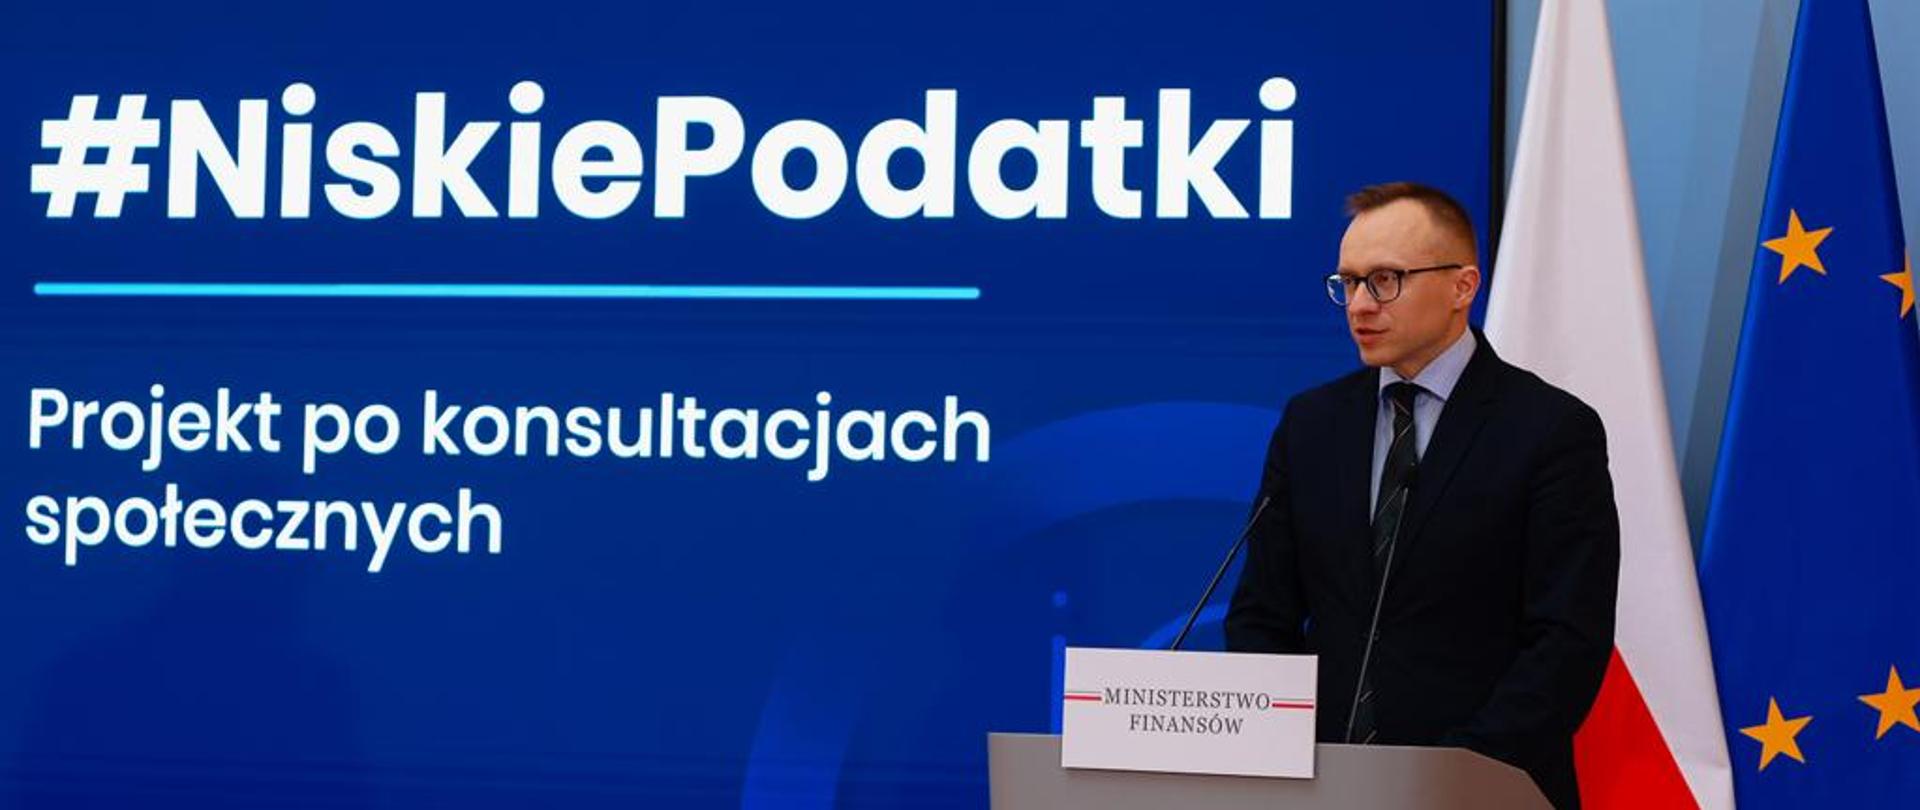 Minister Artur Soboń podczas konferencji na tle banera z napisem Niskie Podatki - projekt po konsultacjach społecznych